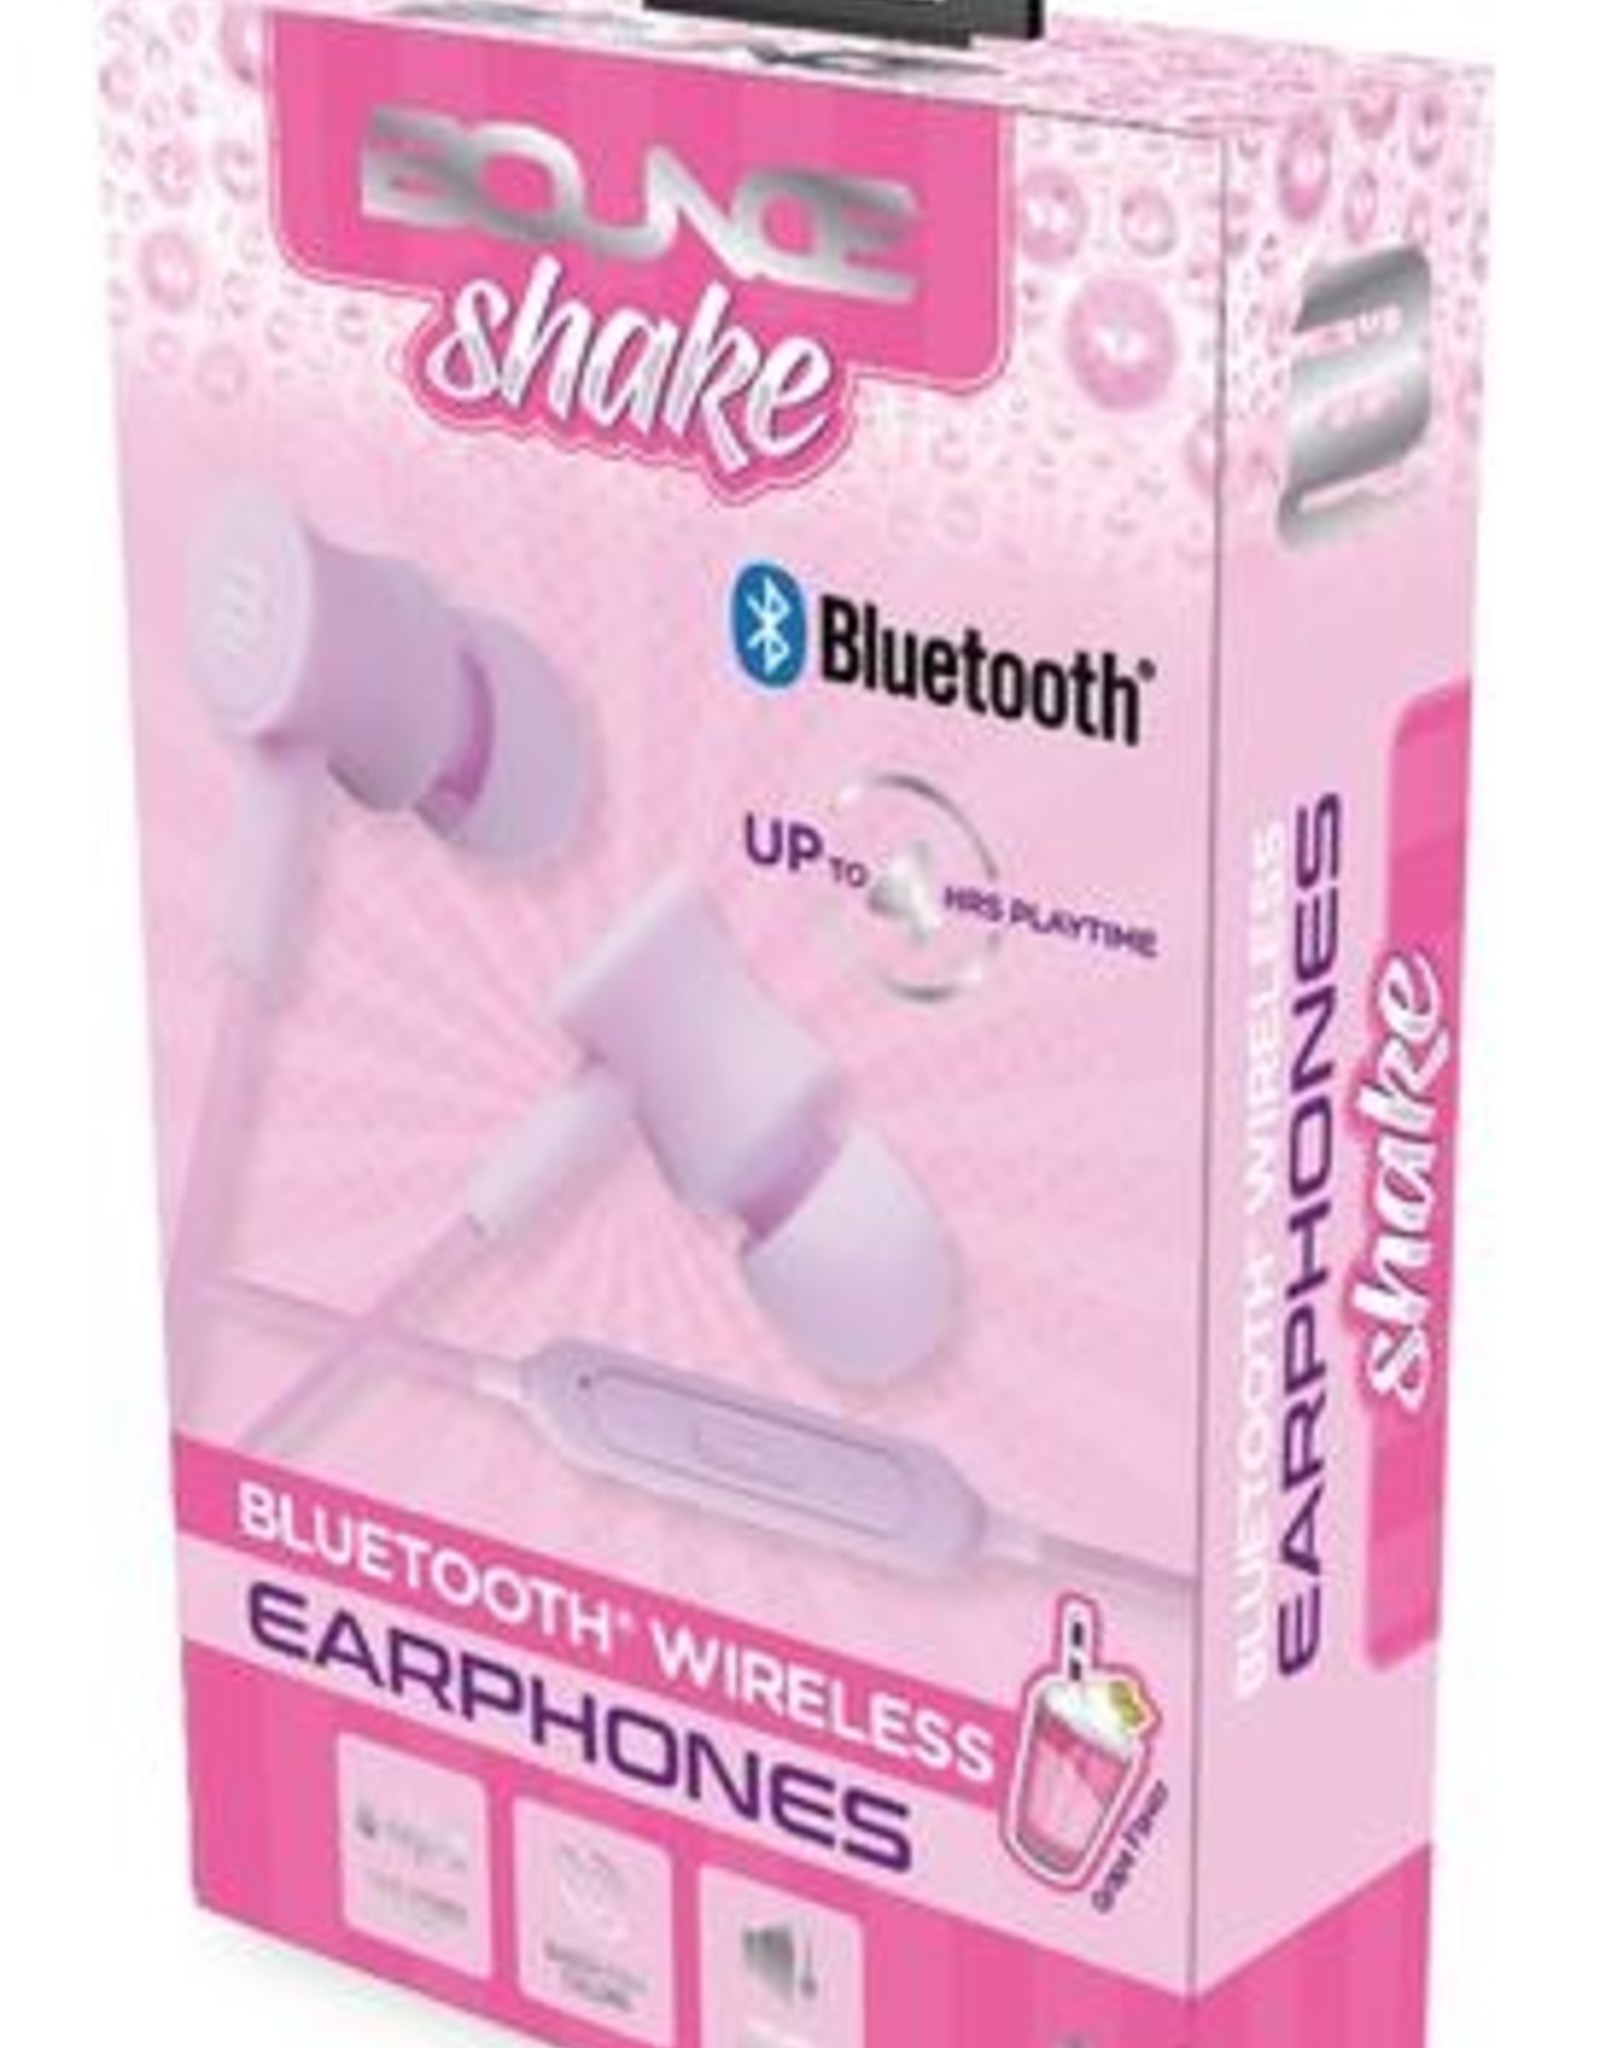 Bounce Bounce shake BT earphones in grape